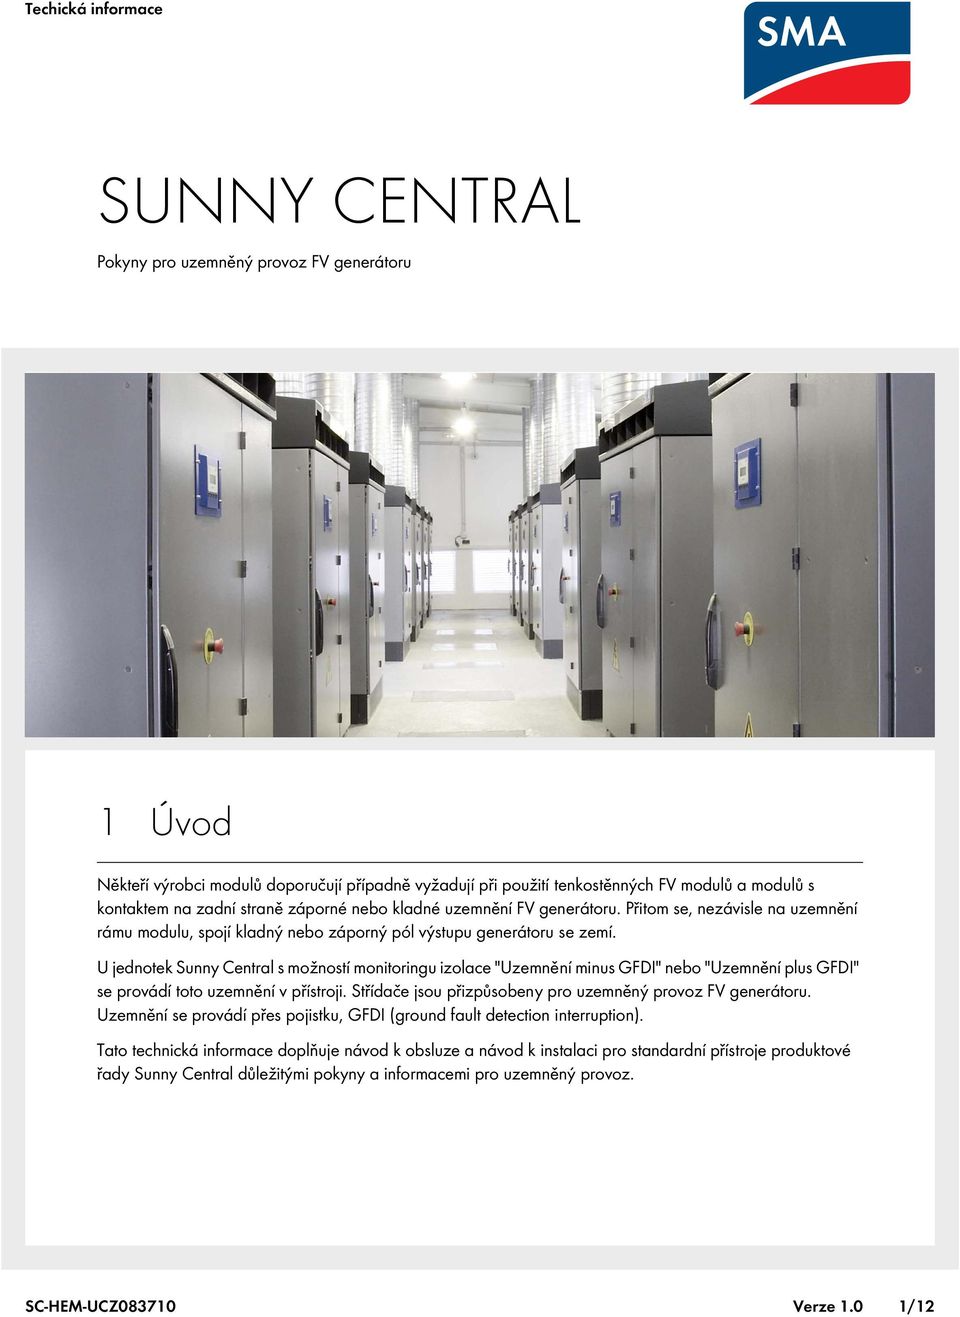 U jednotek Sunny Central s možností monitoringu izolace "Uzemnění minus GFDI" nebo "Uzemnění plus GFDI" se provádí toto uzemnění v přístroji.